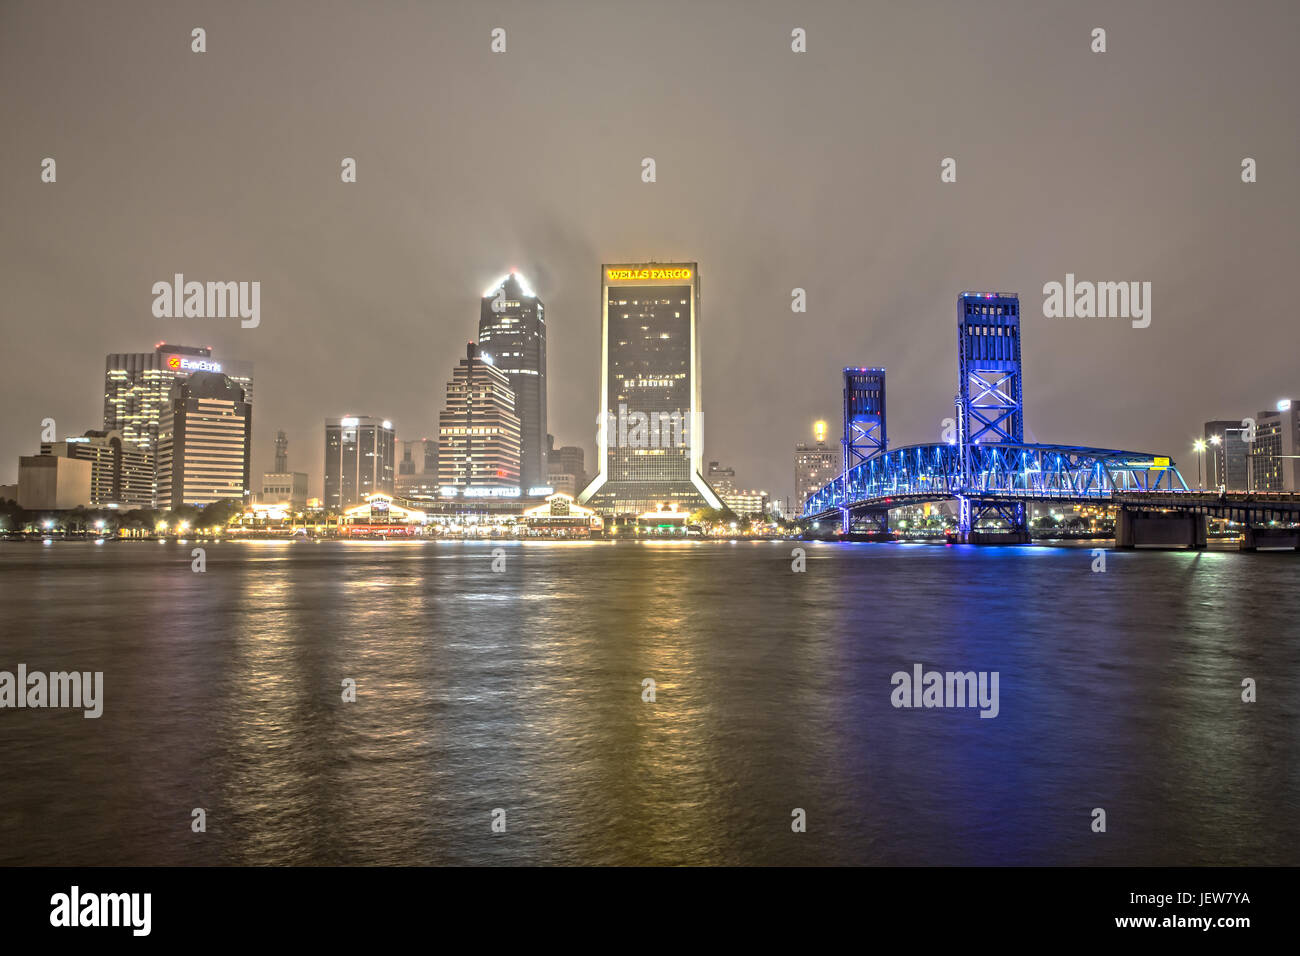 Le centre-ville de Jacksonville Skyline au Main Street Bridge at Night sur un soir de pluie Banque D'Images